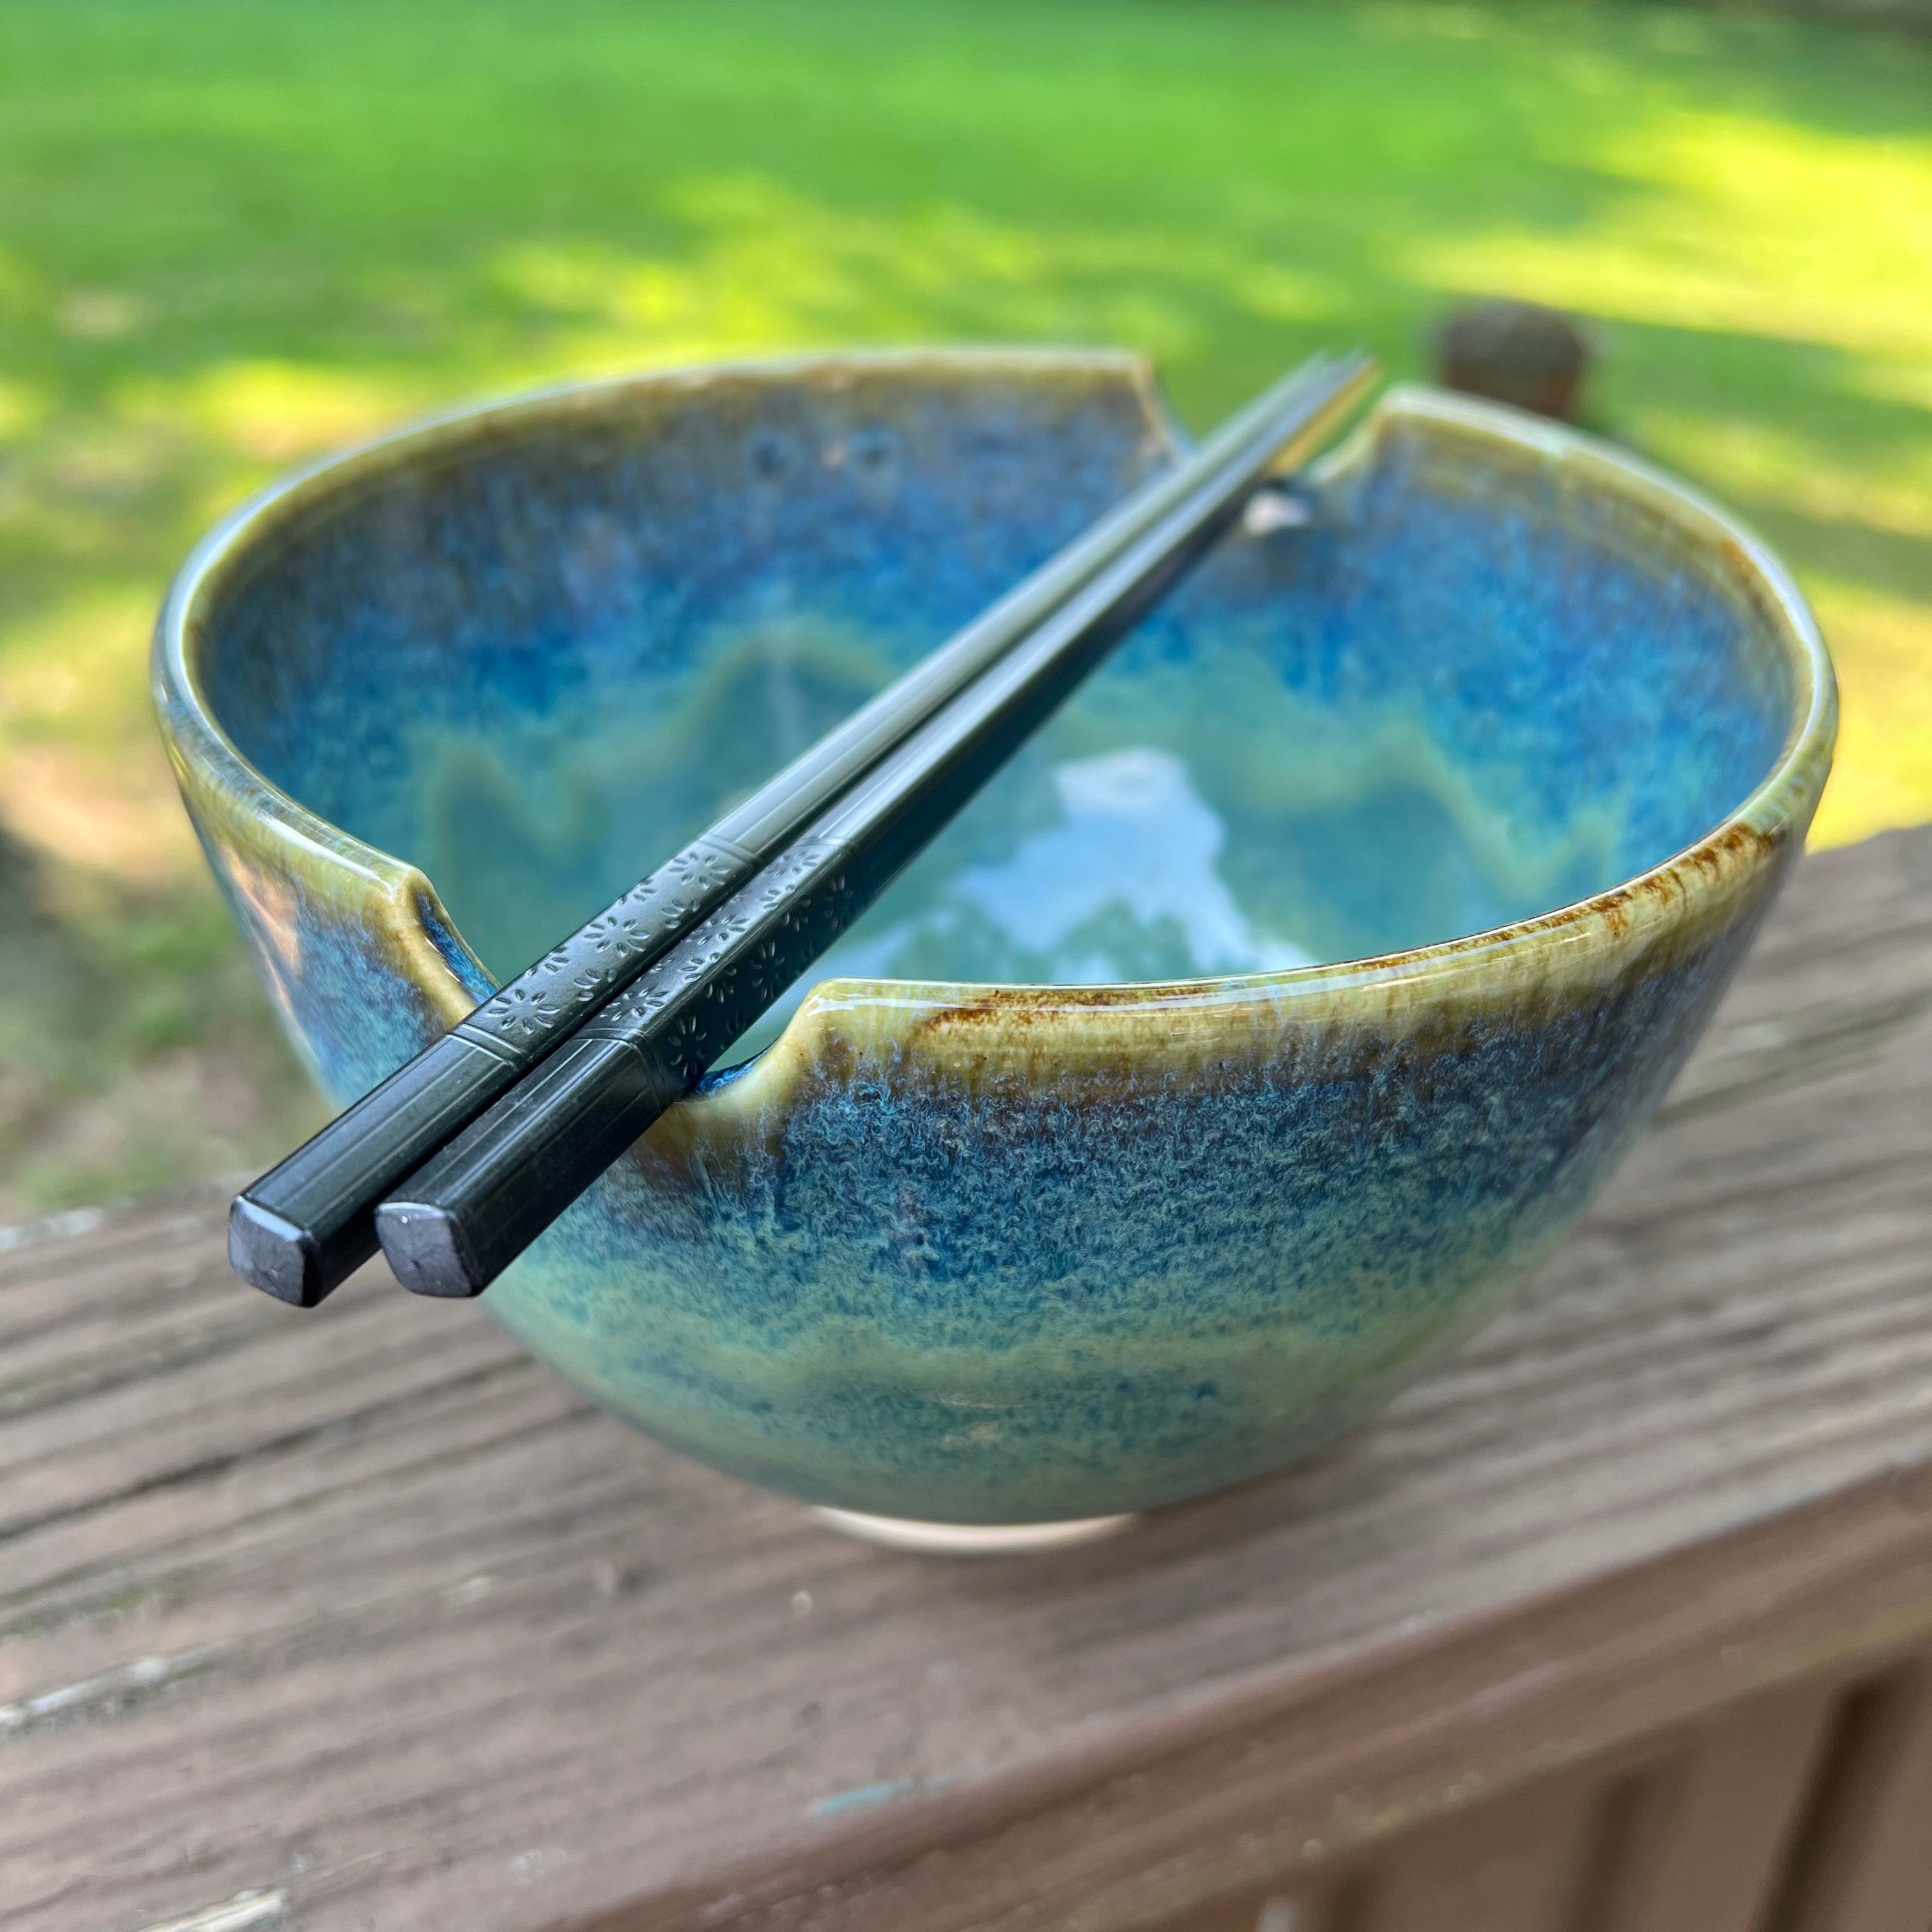 Ramen Gift Set with Bowls & Chopsticks